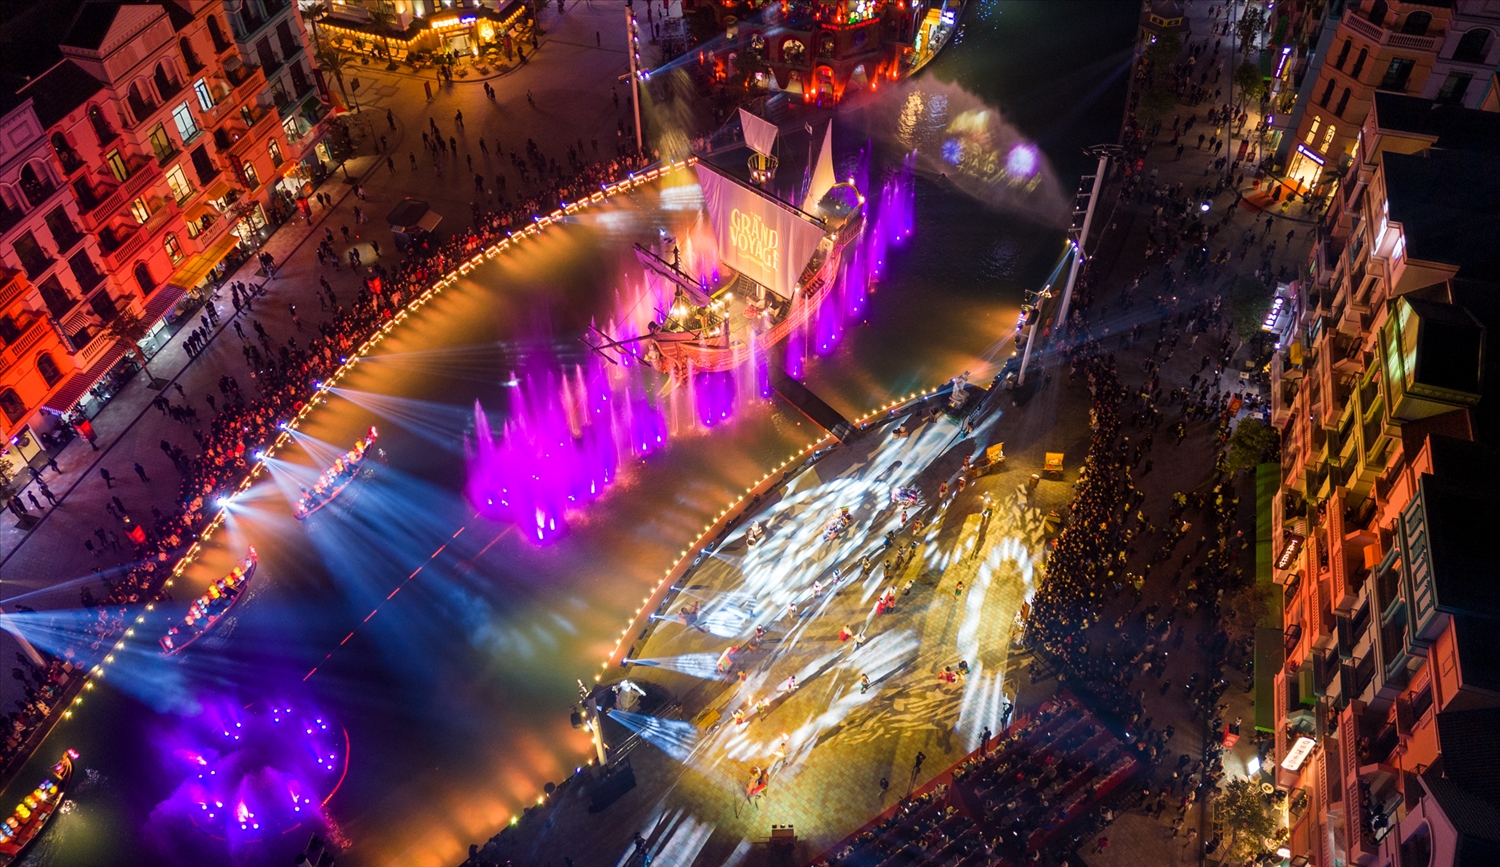 Mãn nhãn với show thực cảnh 3D mapping trên sân khấu thuyền lớn nhất châu Á tại Mega Grand world Hà Nội